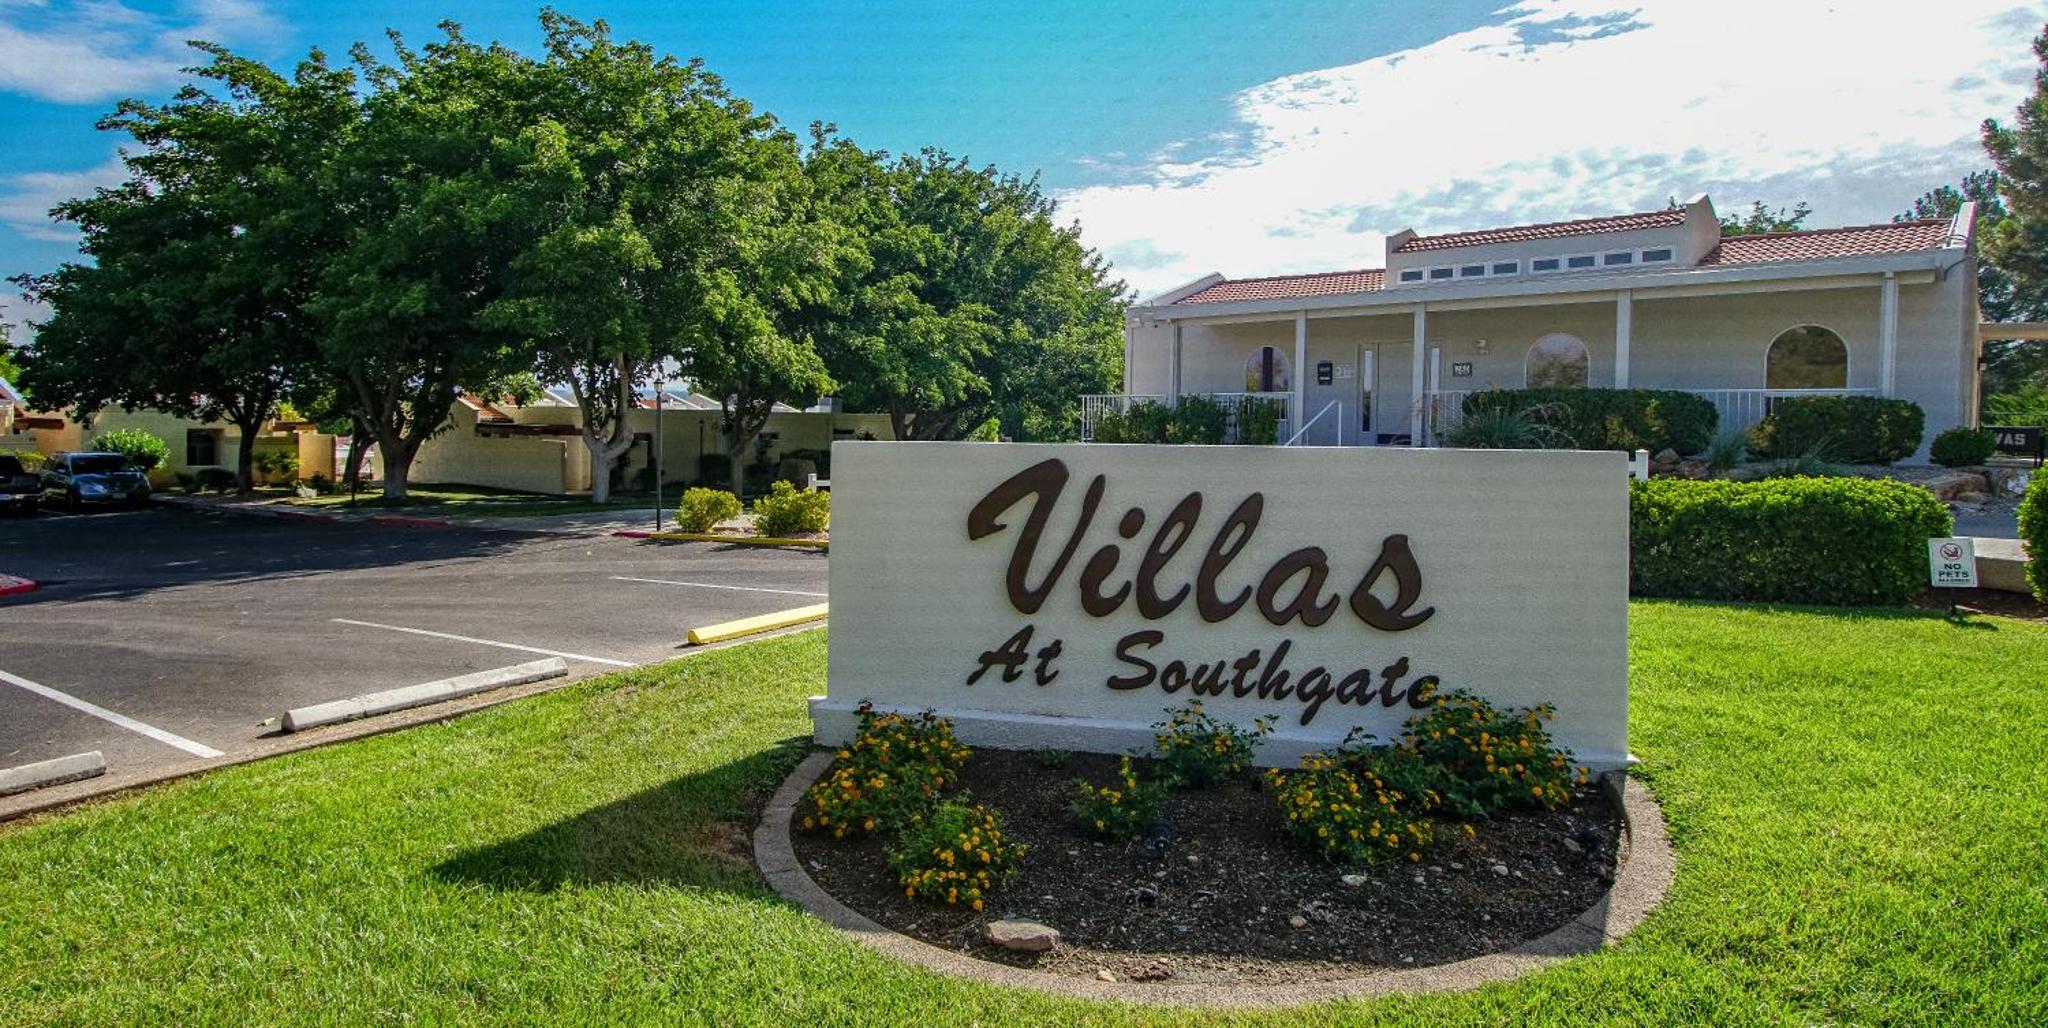 Multi Resorts Villas at Southgate